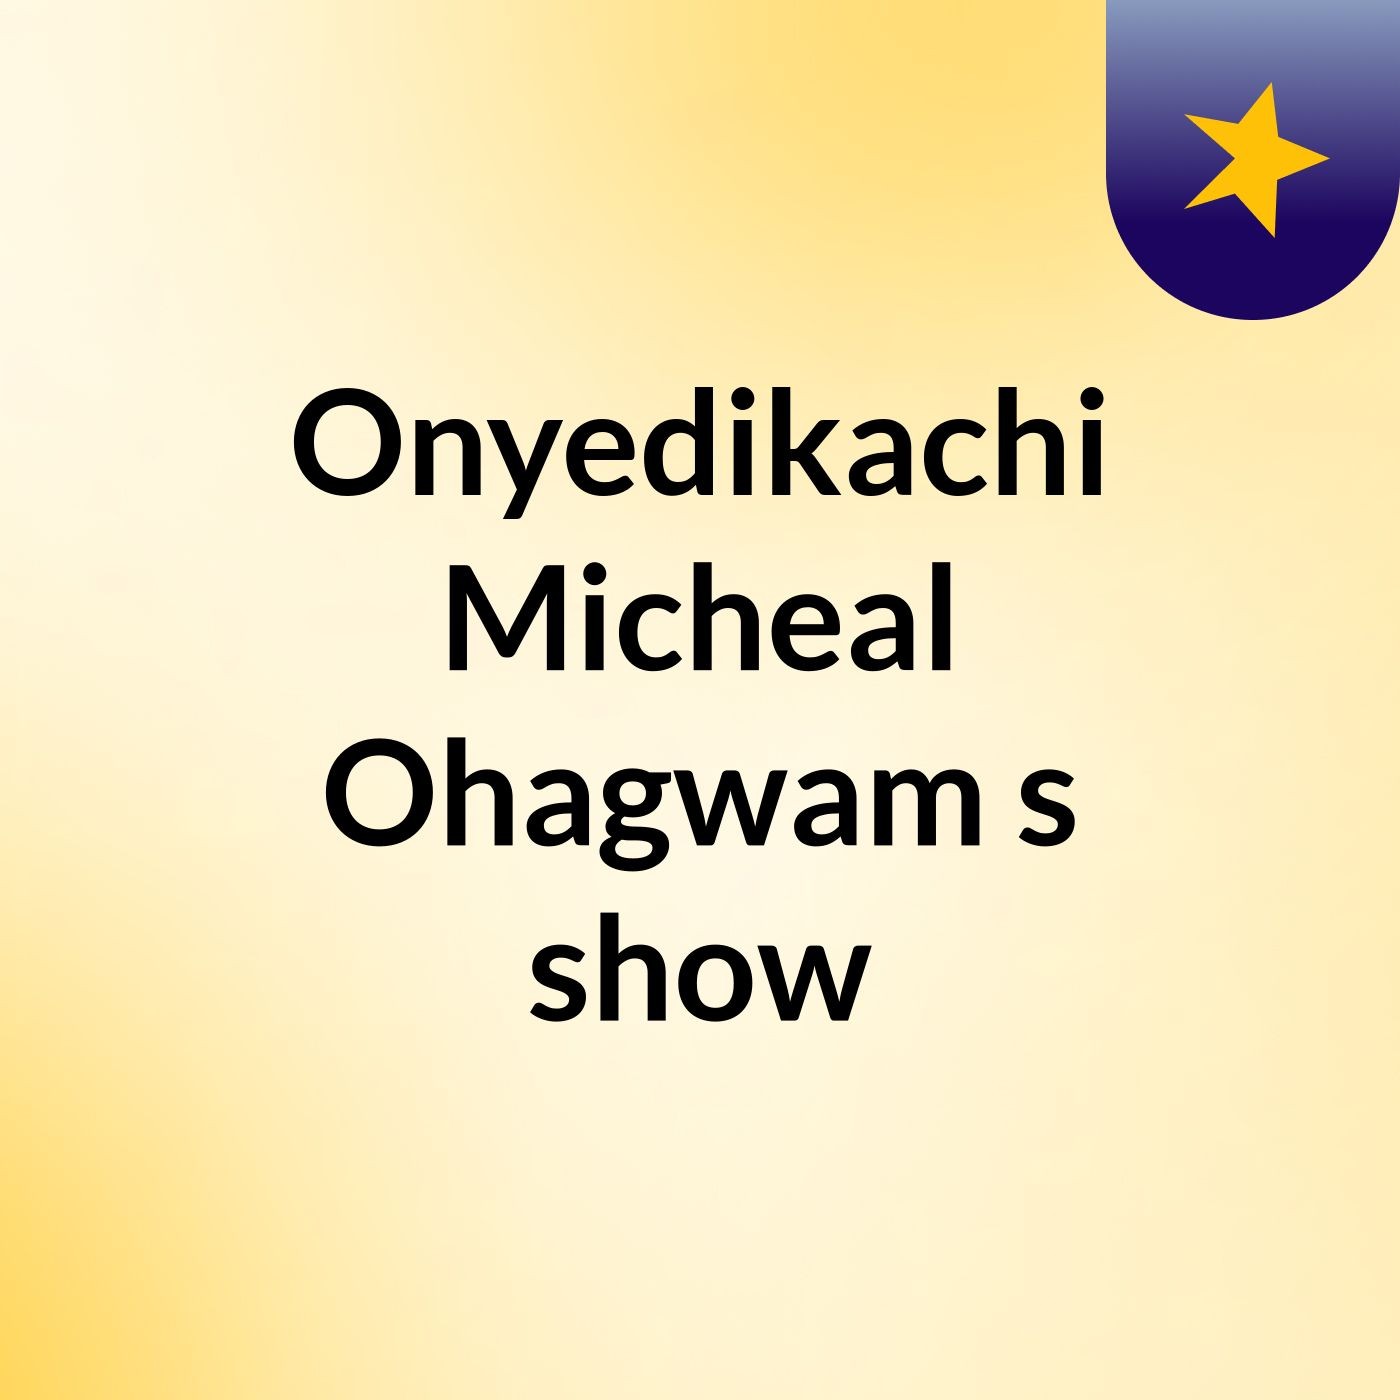 Onyedikachi Micheal Ohagwam's show